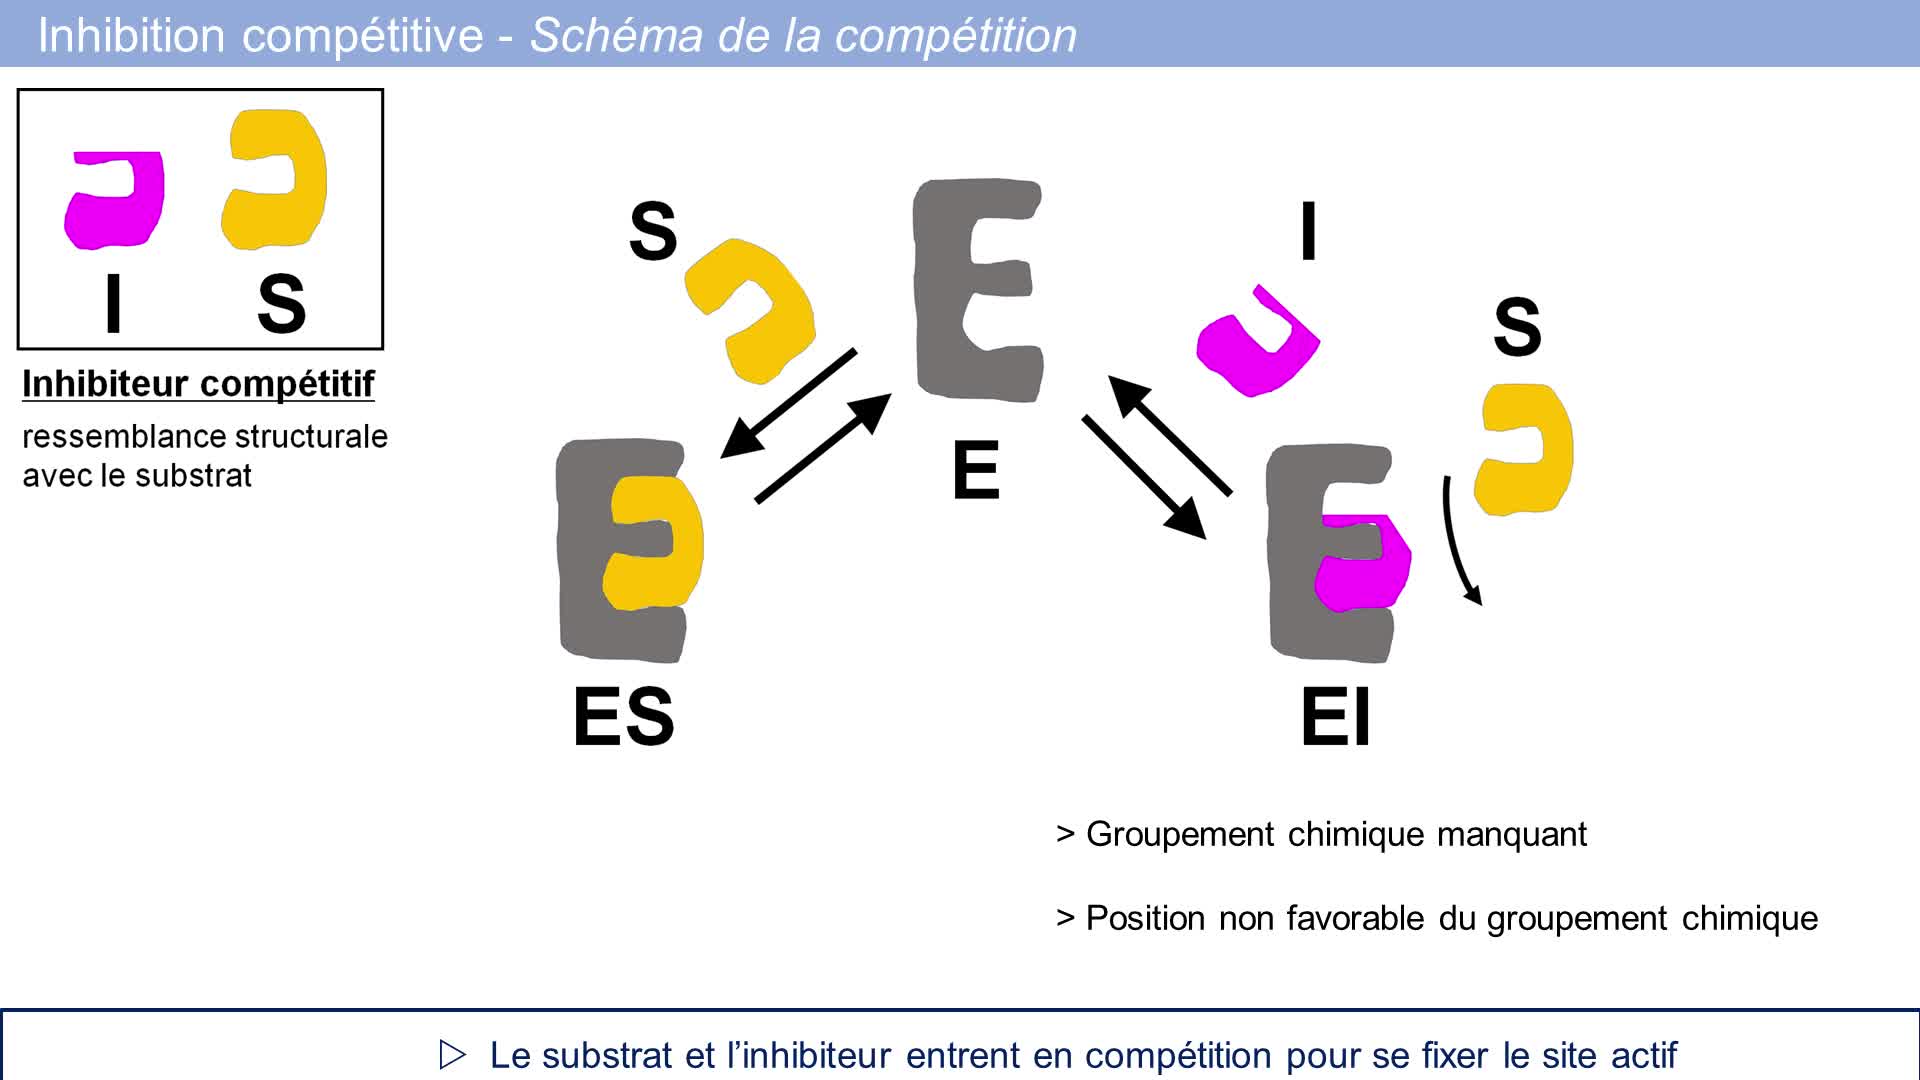 TRILOGIQUE Semaine 13: enzymes et enzymologie-inhibition compétitive